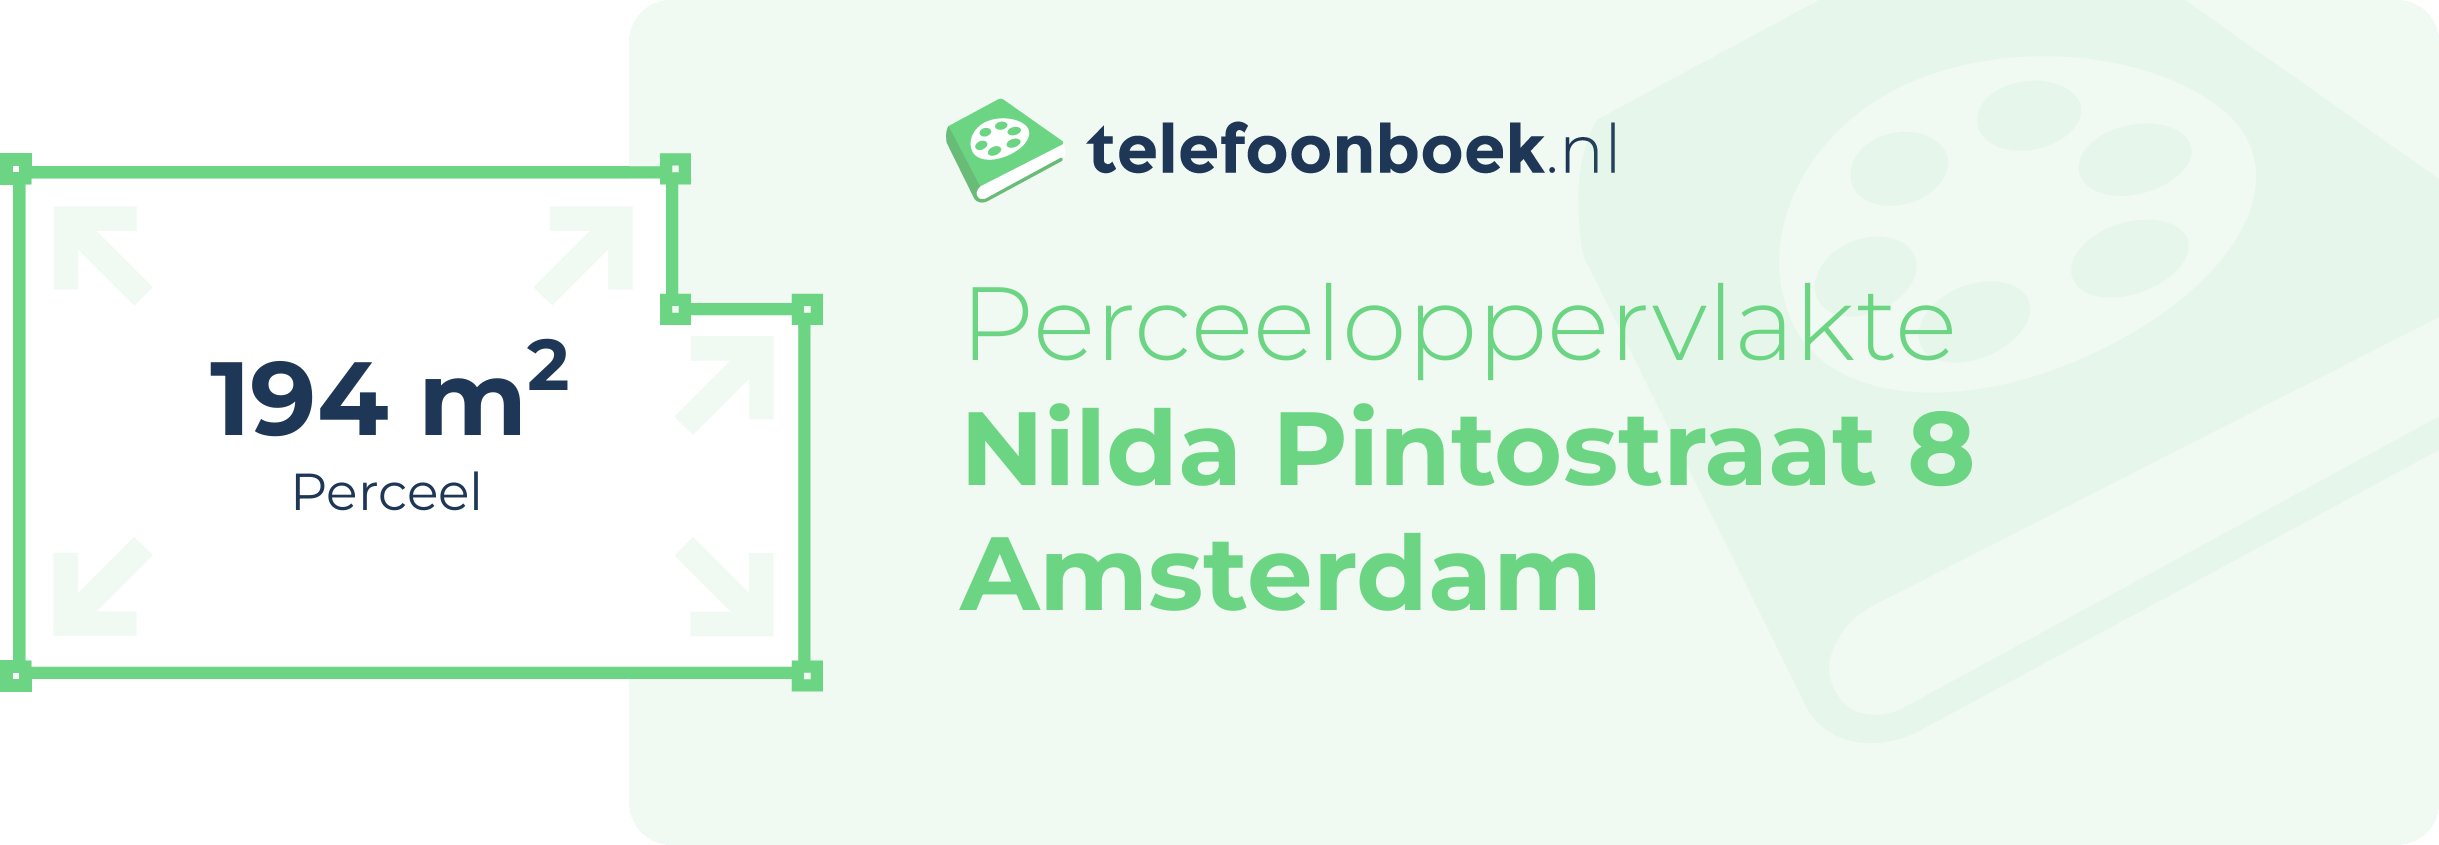 Perceeloppervlakte Nilda Pintostraat 8 Amsterdam